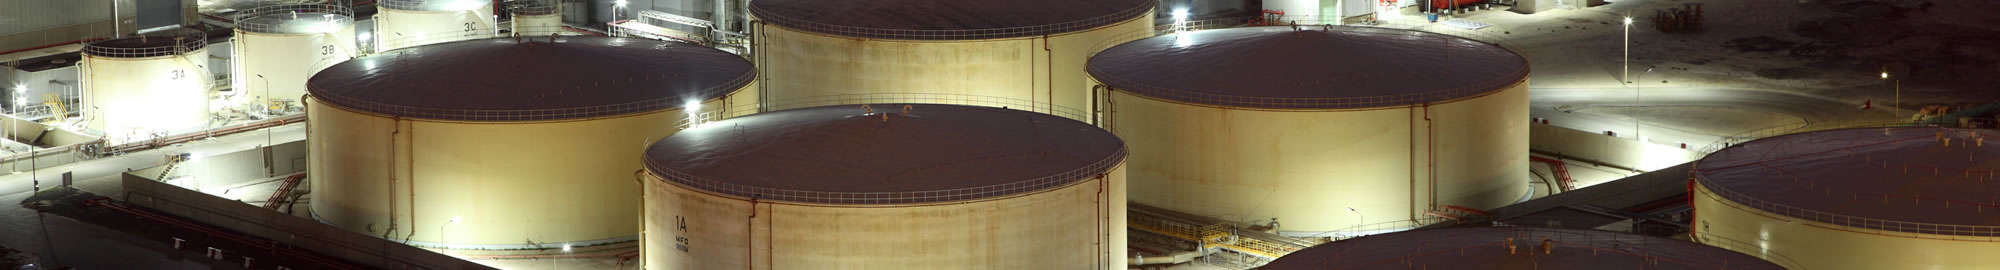 Refinery storage tanks